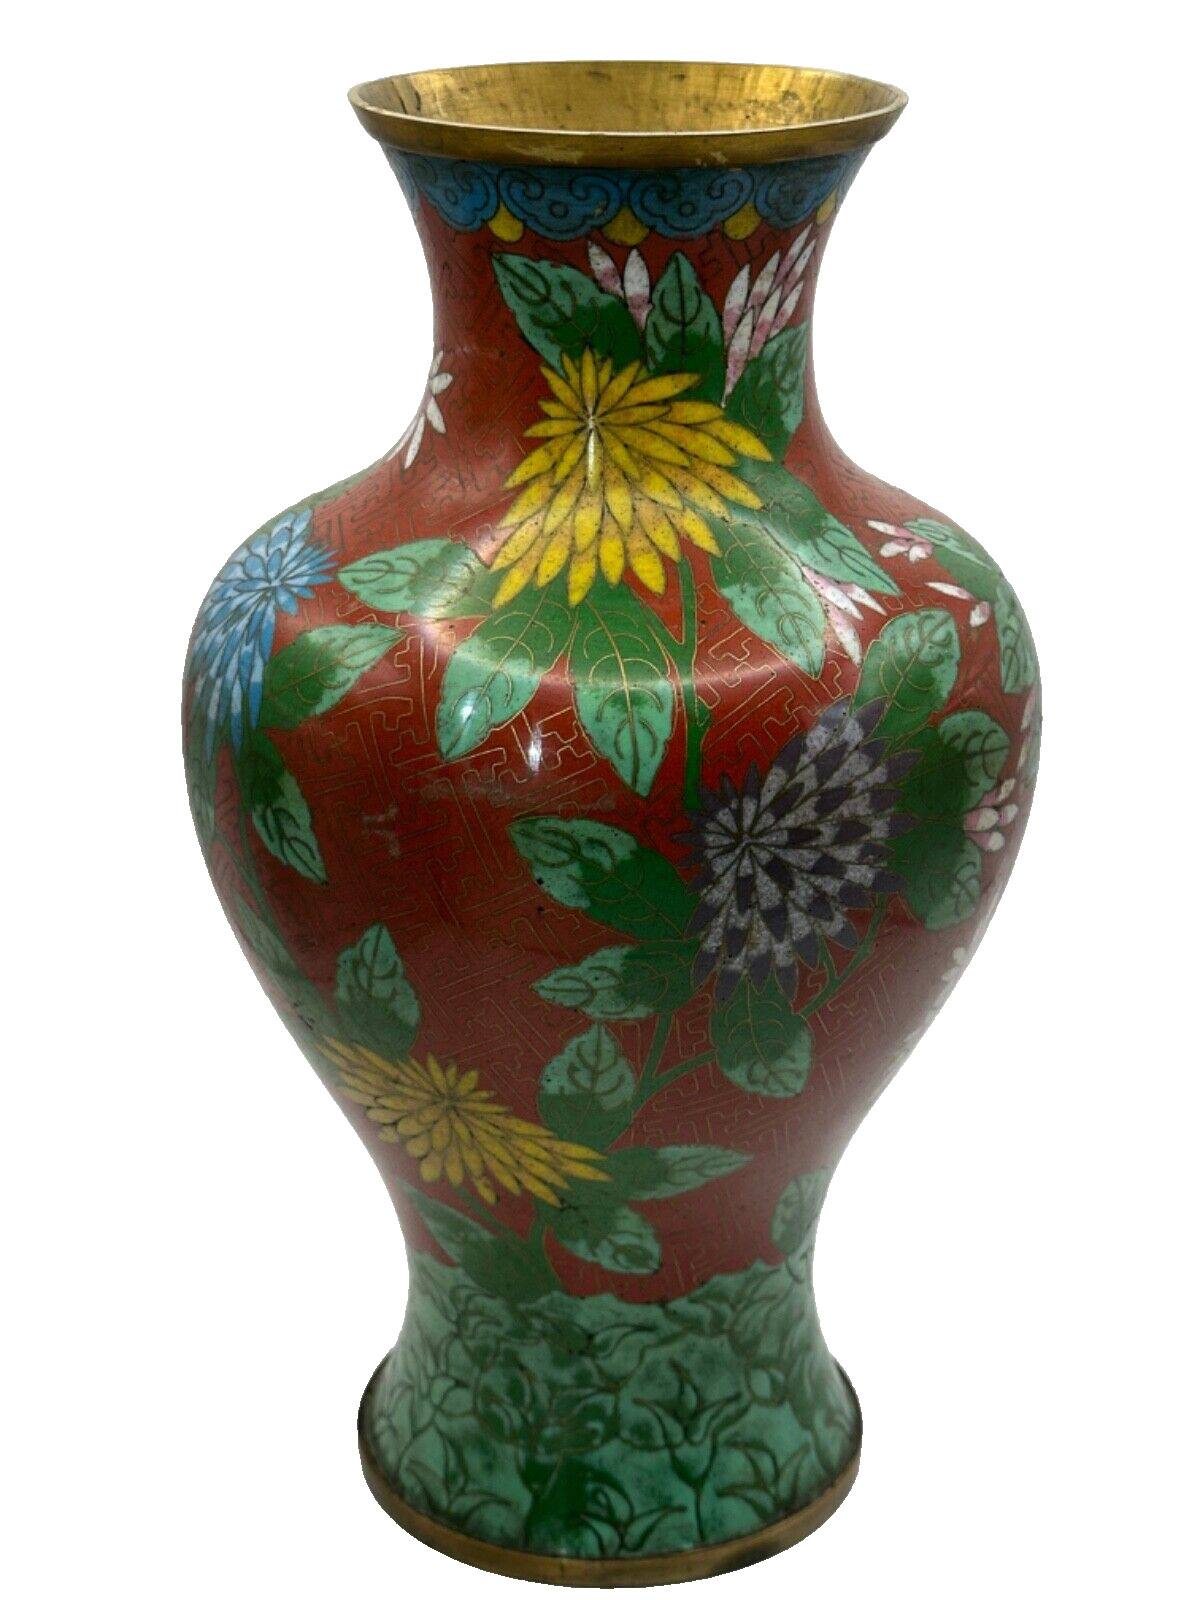 Large Cloisonne Chinese Vase Antique Vintage Asian Decor